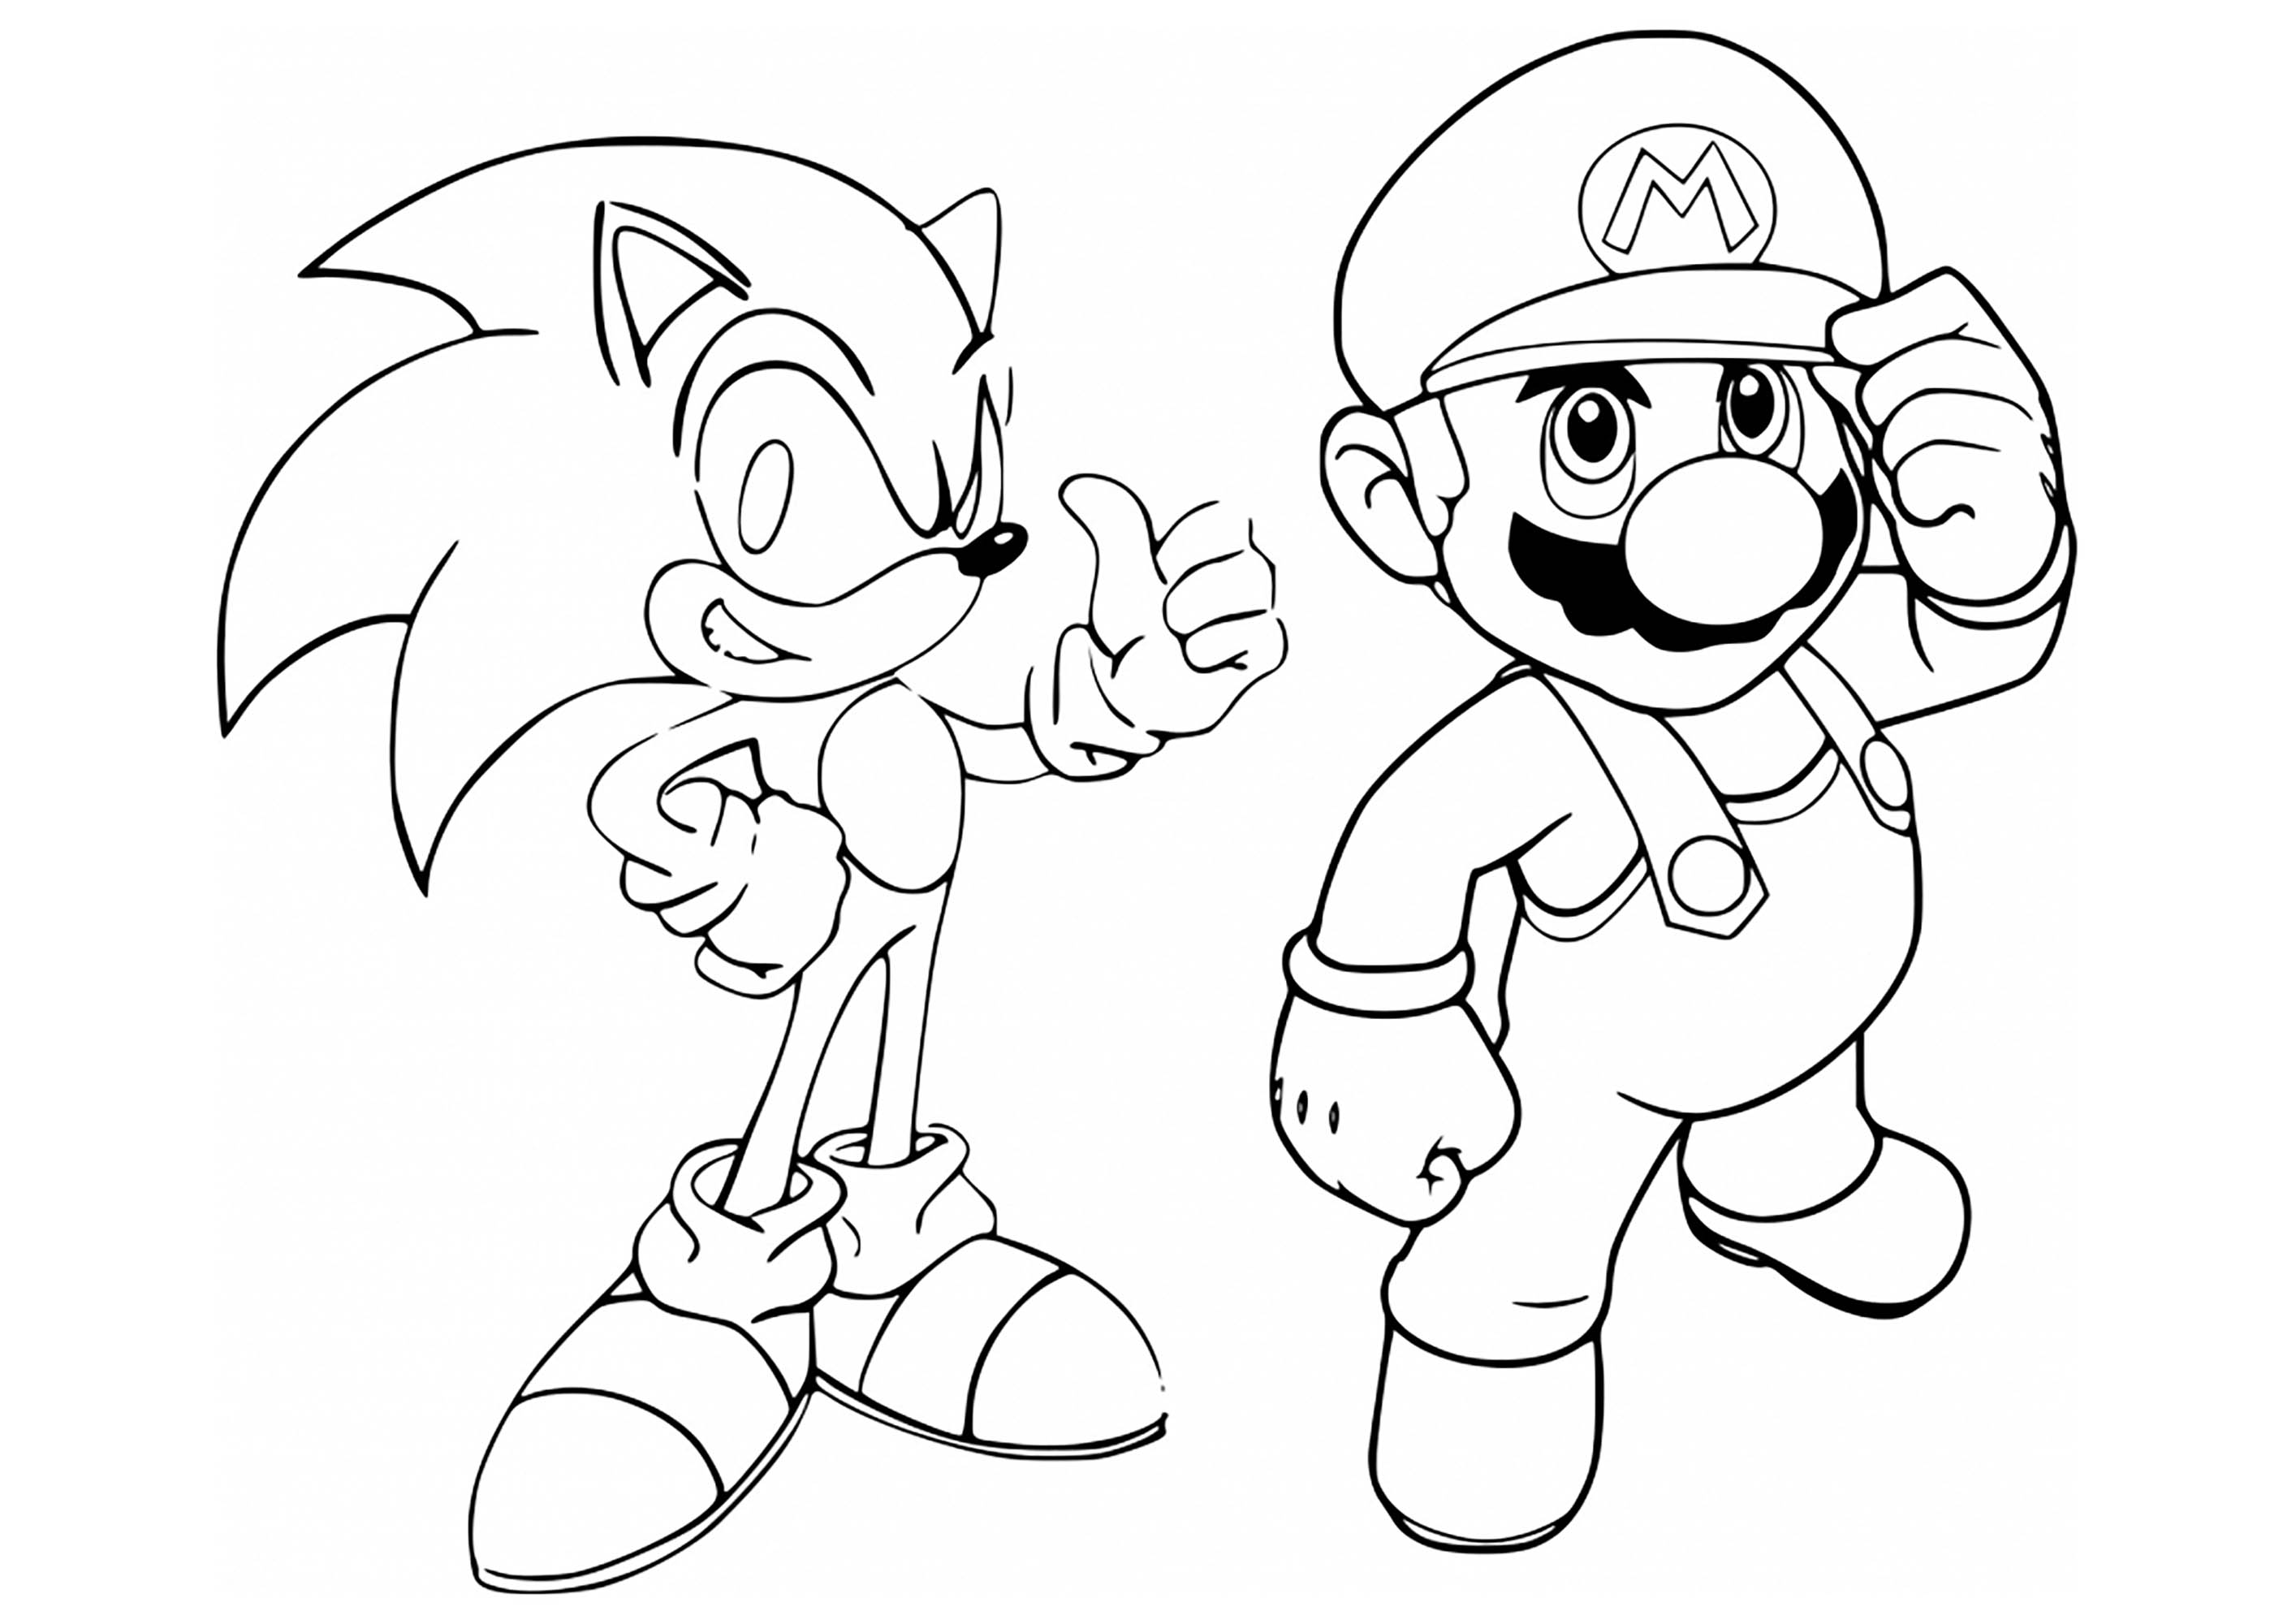 Dibujo para colorear de Sonic y Mario en los juegos olímpicos de Tokio